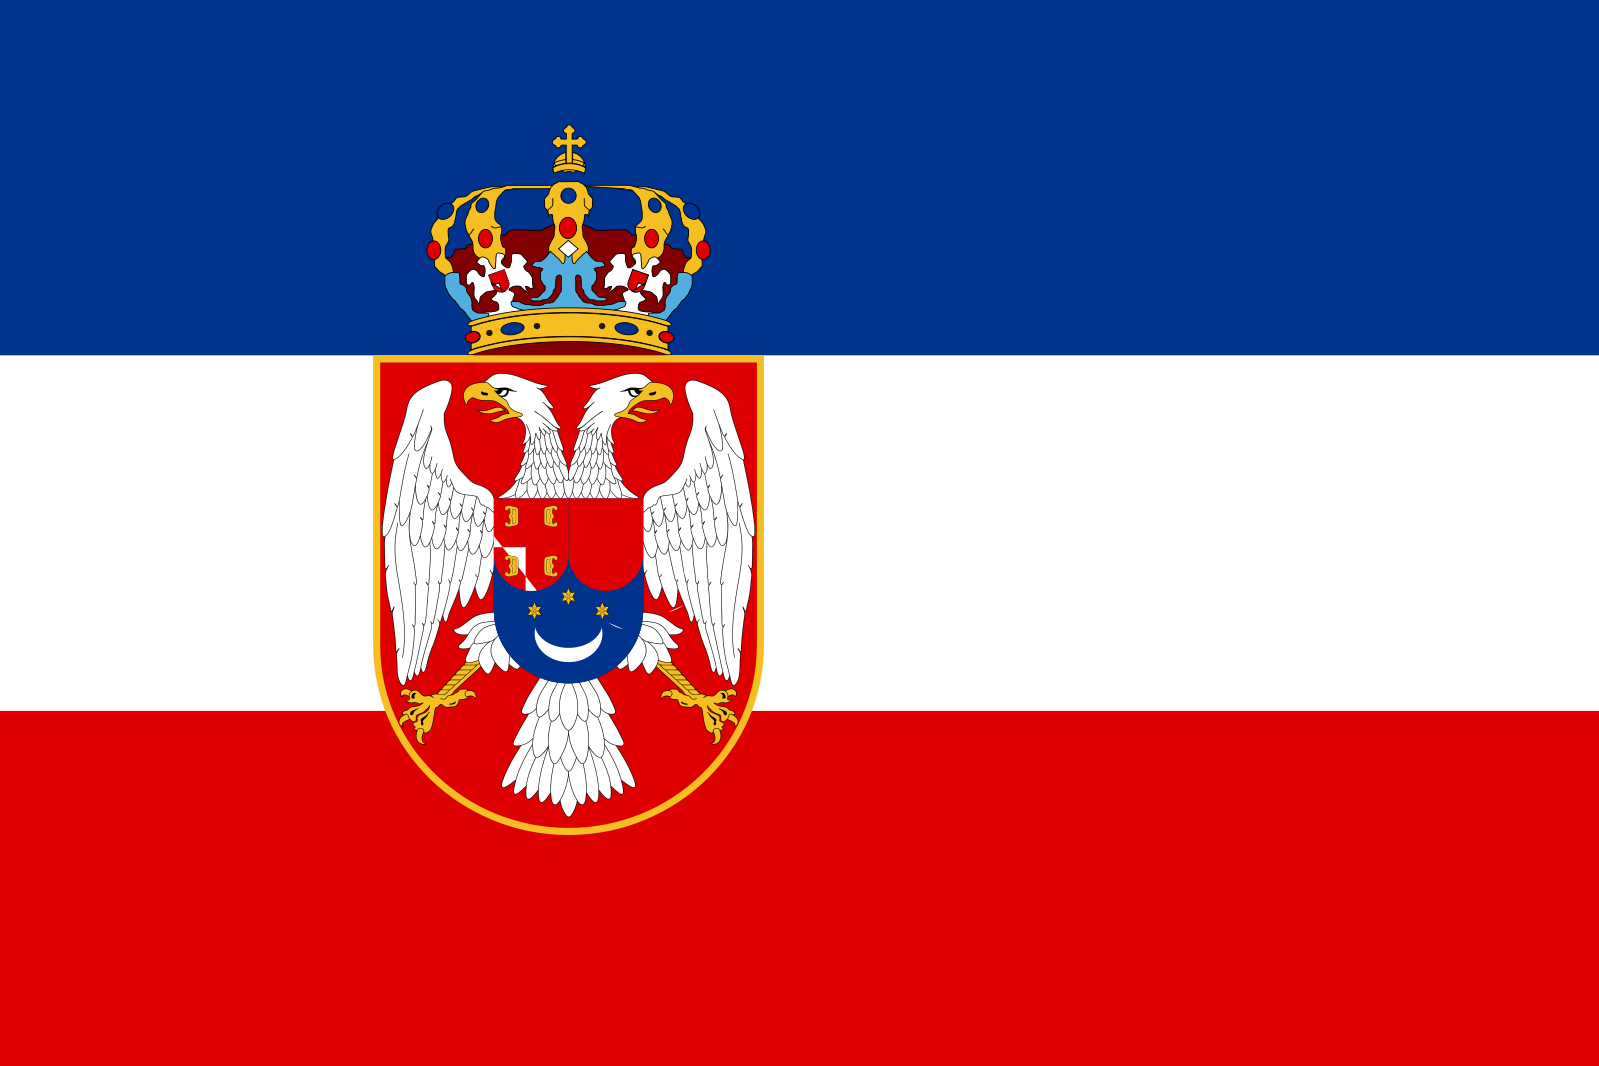 Флаг королевства. Флаг королевства Сербии. Флаг королевства Югославии. Флаг королевства сербов хорватов и словенцев. Флаг Сербии 1914.